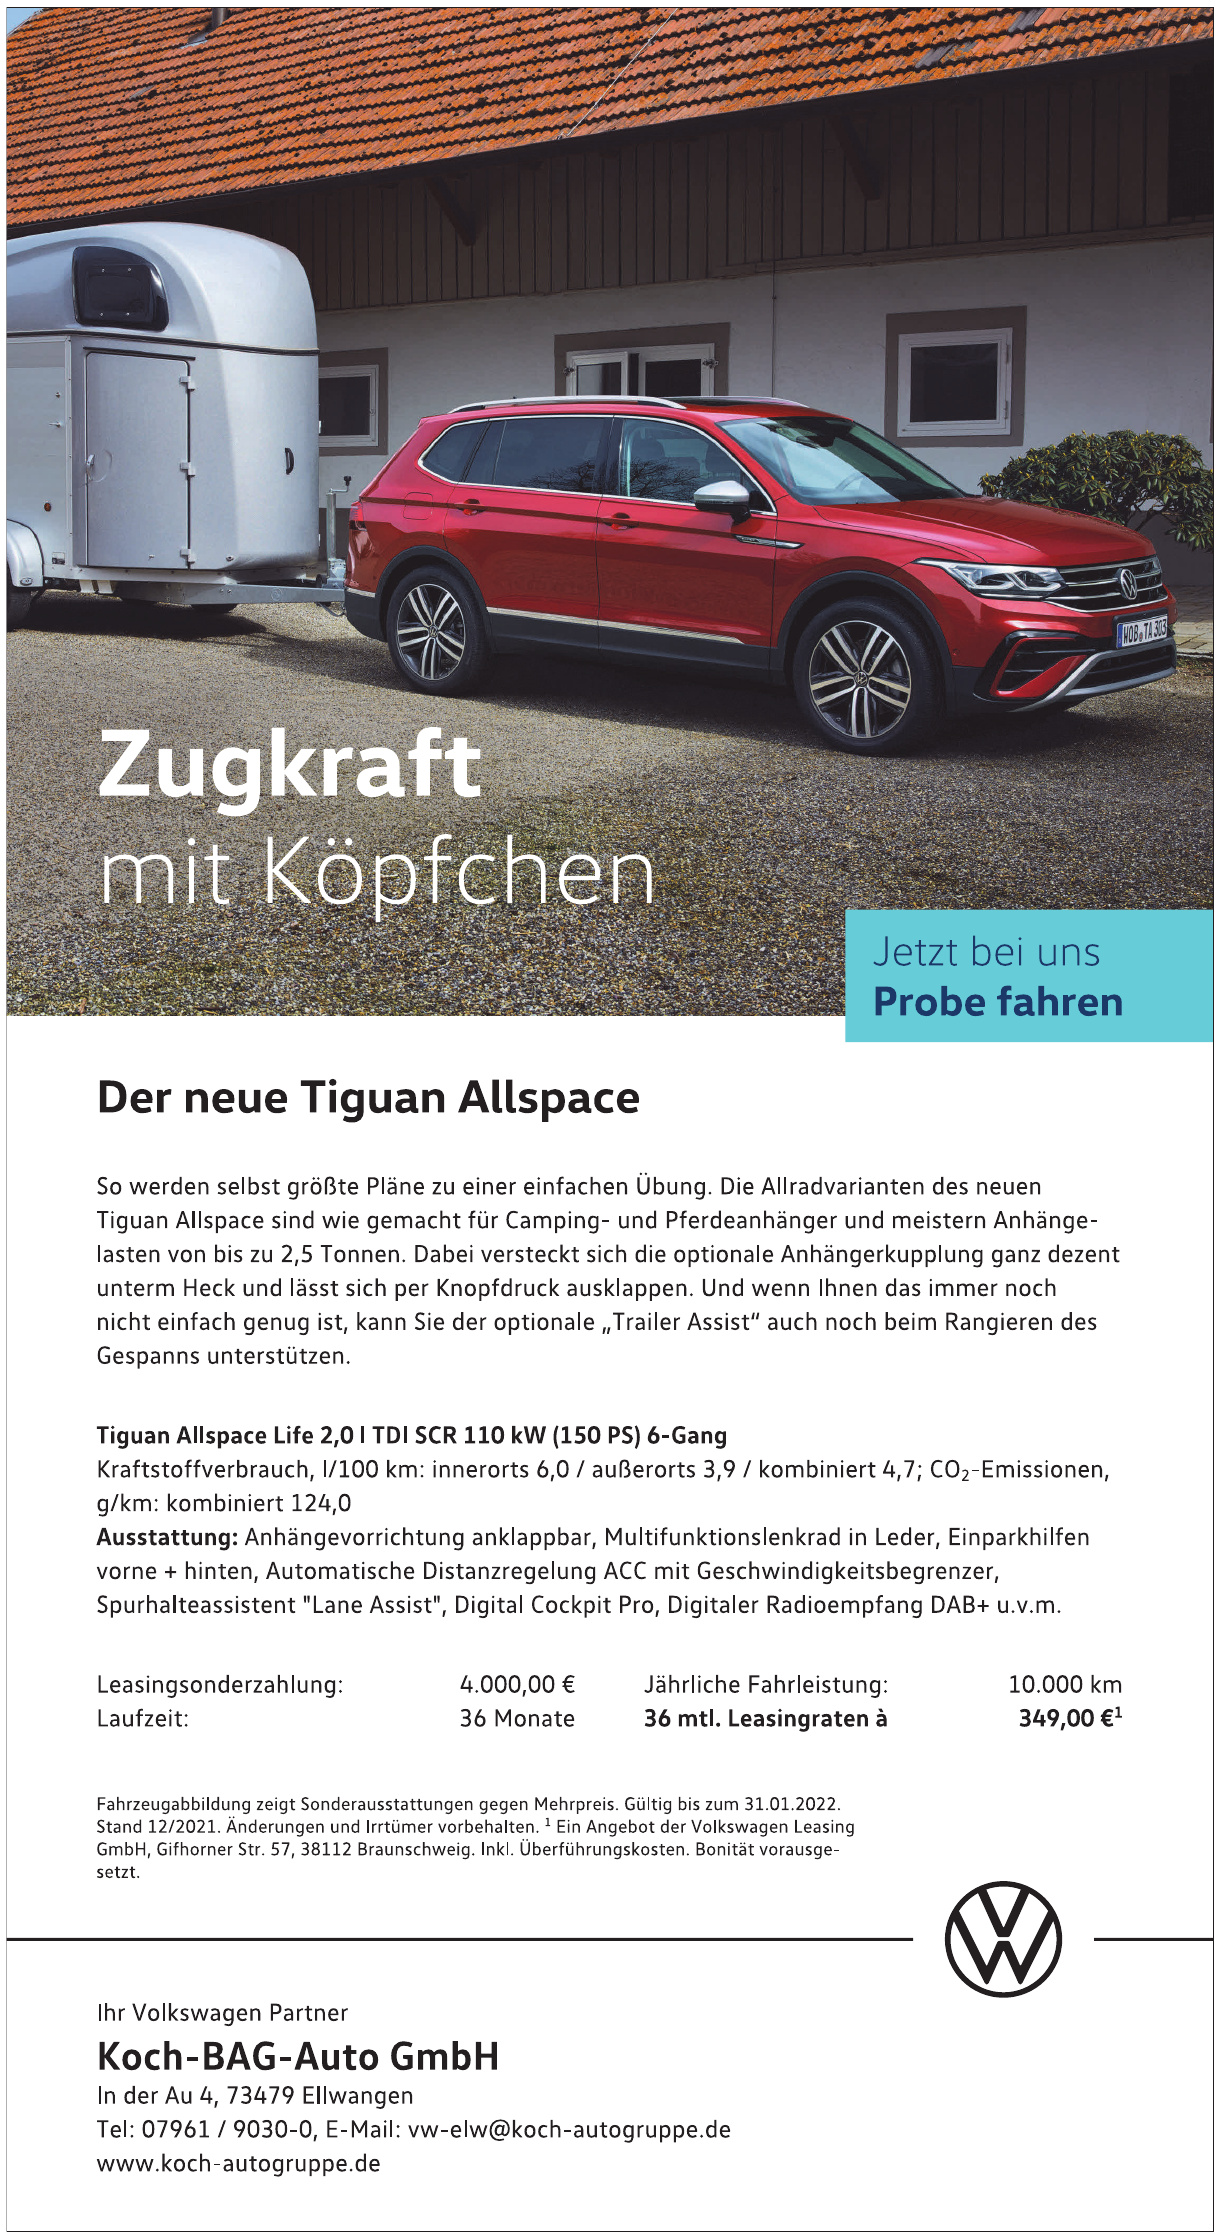 Koch-BAG-Auto-GmbH